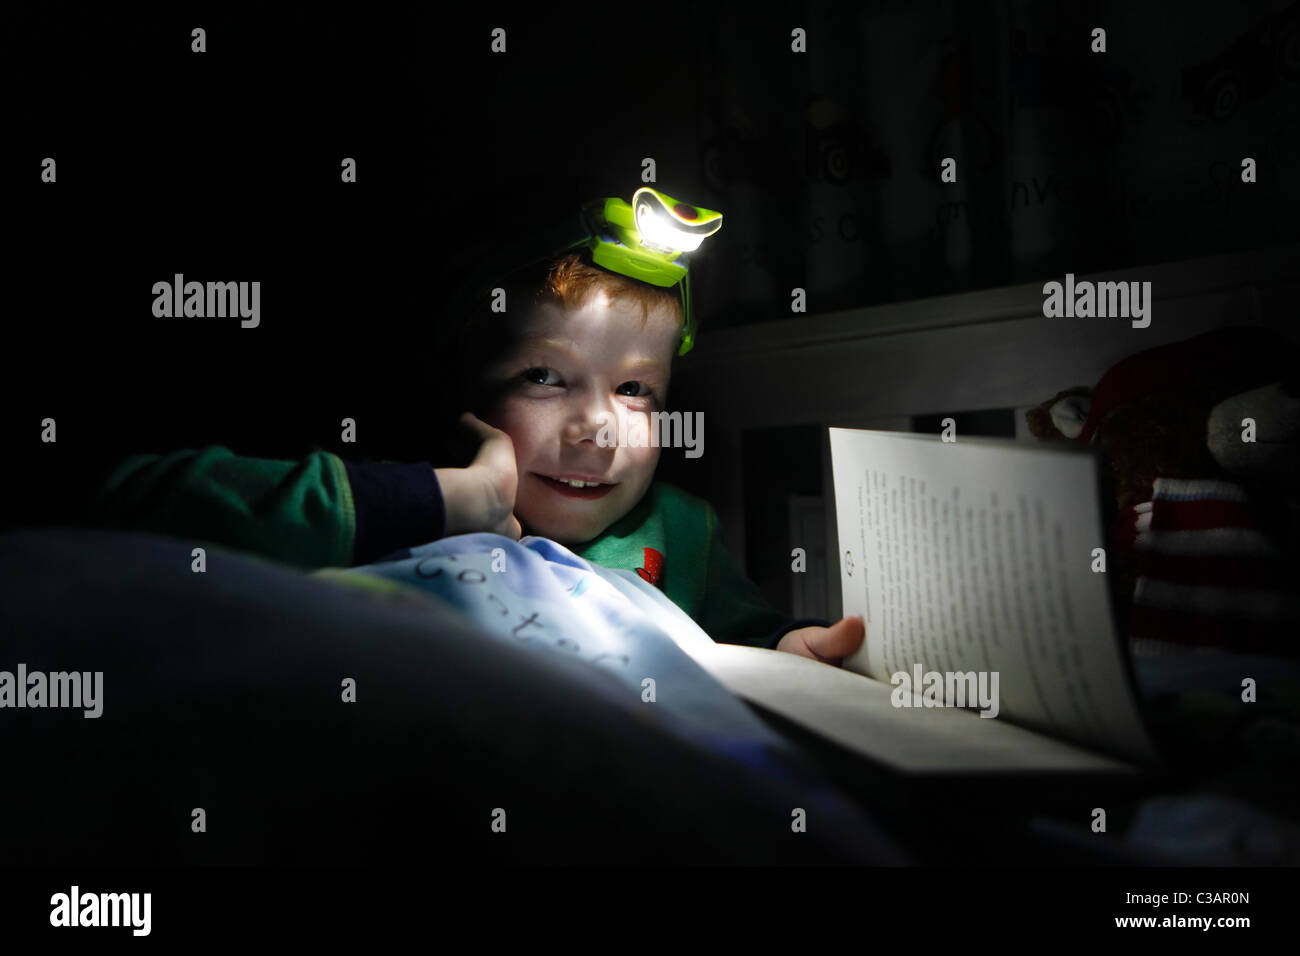 https://c8.alamy.com/compit/c3ar0n/a-sette-anni-di-vecchio-ragazzo-per-leggere-un-libro-nel-suo-letto-utilizzando-una-lampada-da-testa-c3ar0n.jpg